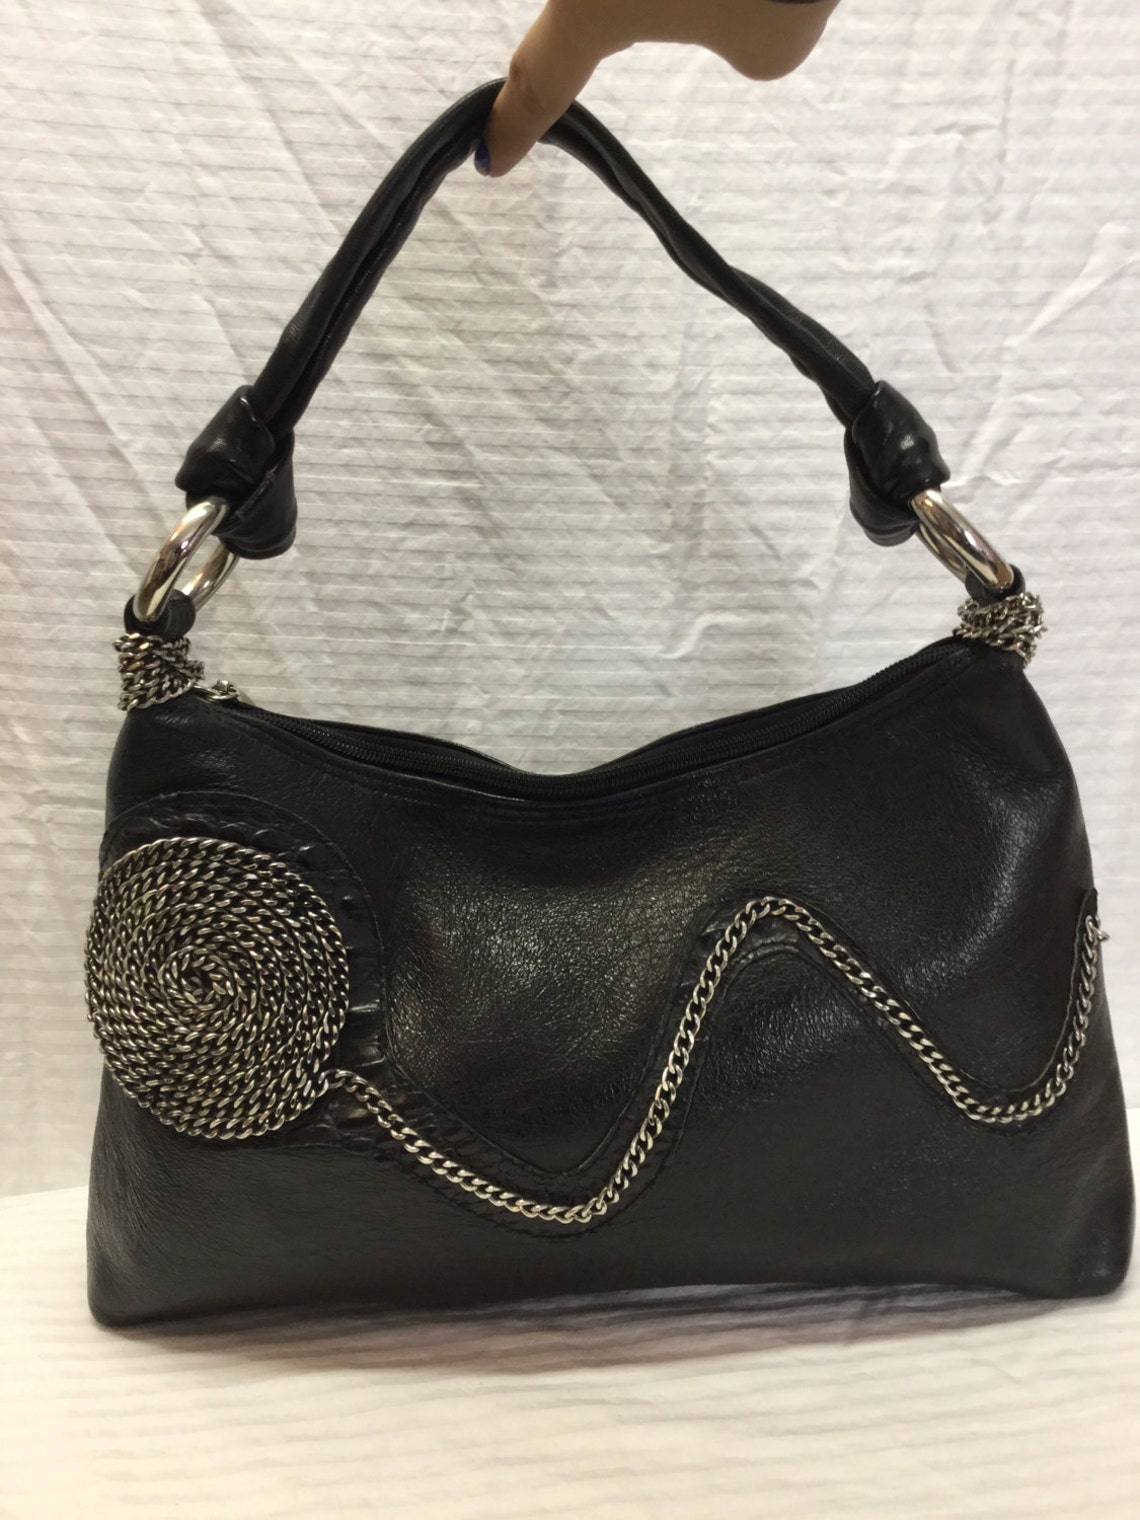 Black Faux Leather Purse Bag Silver Chains Shoulder Bag | Etsy